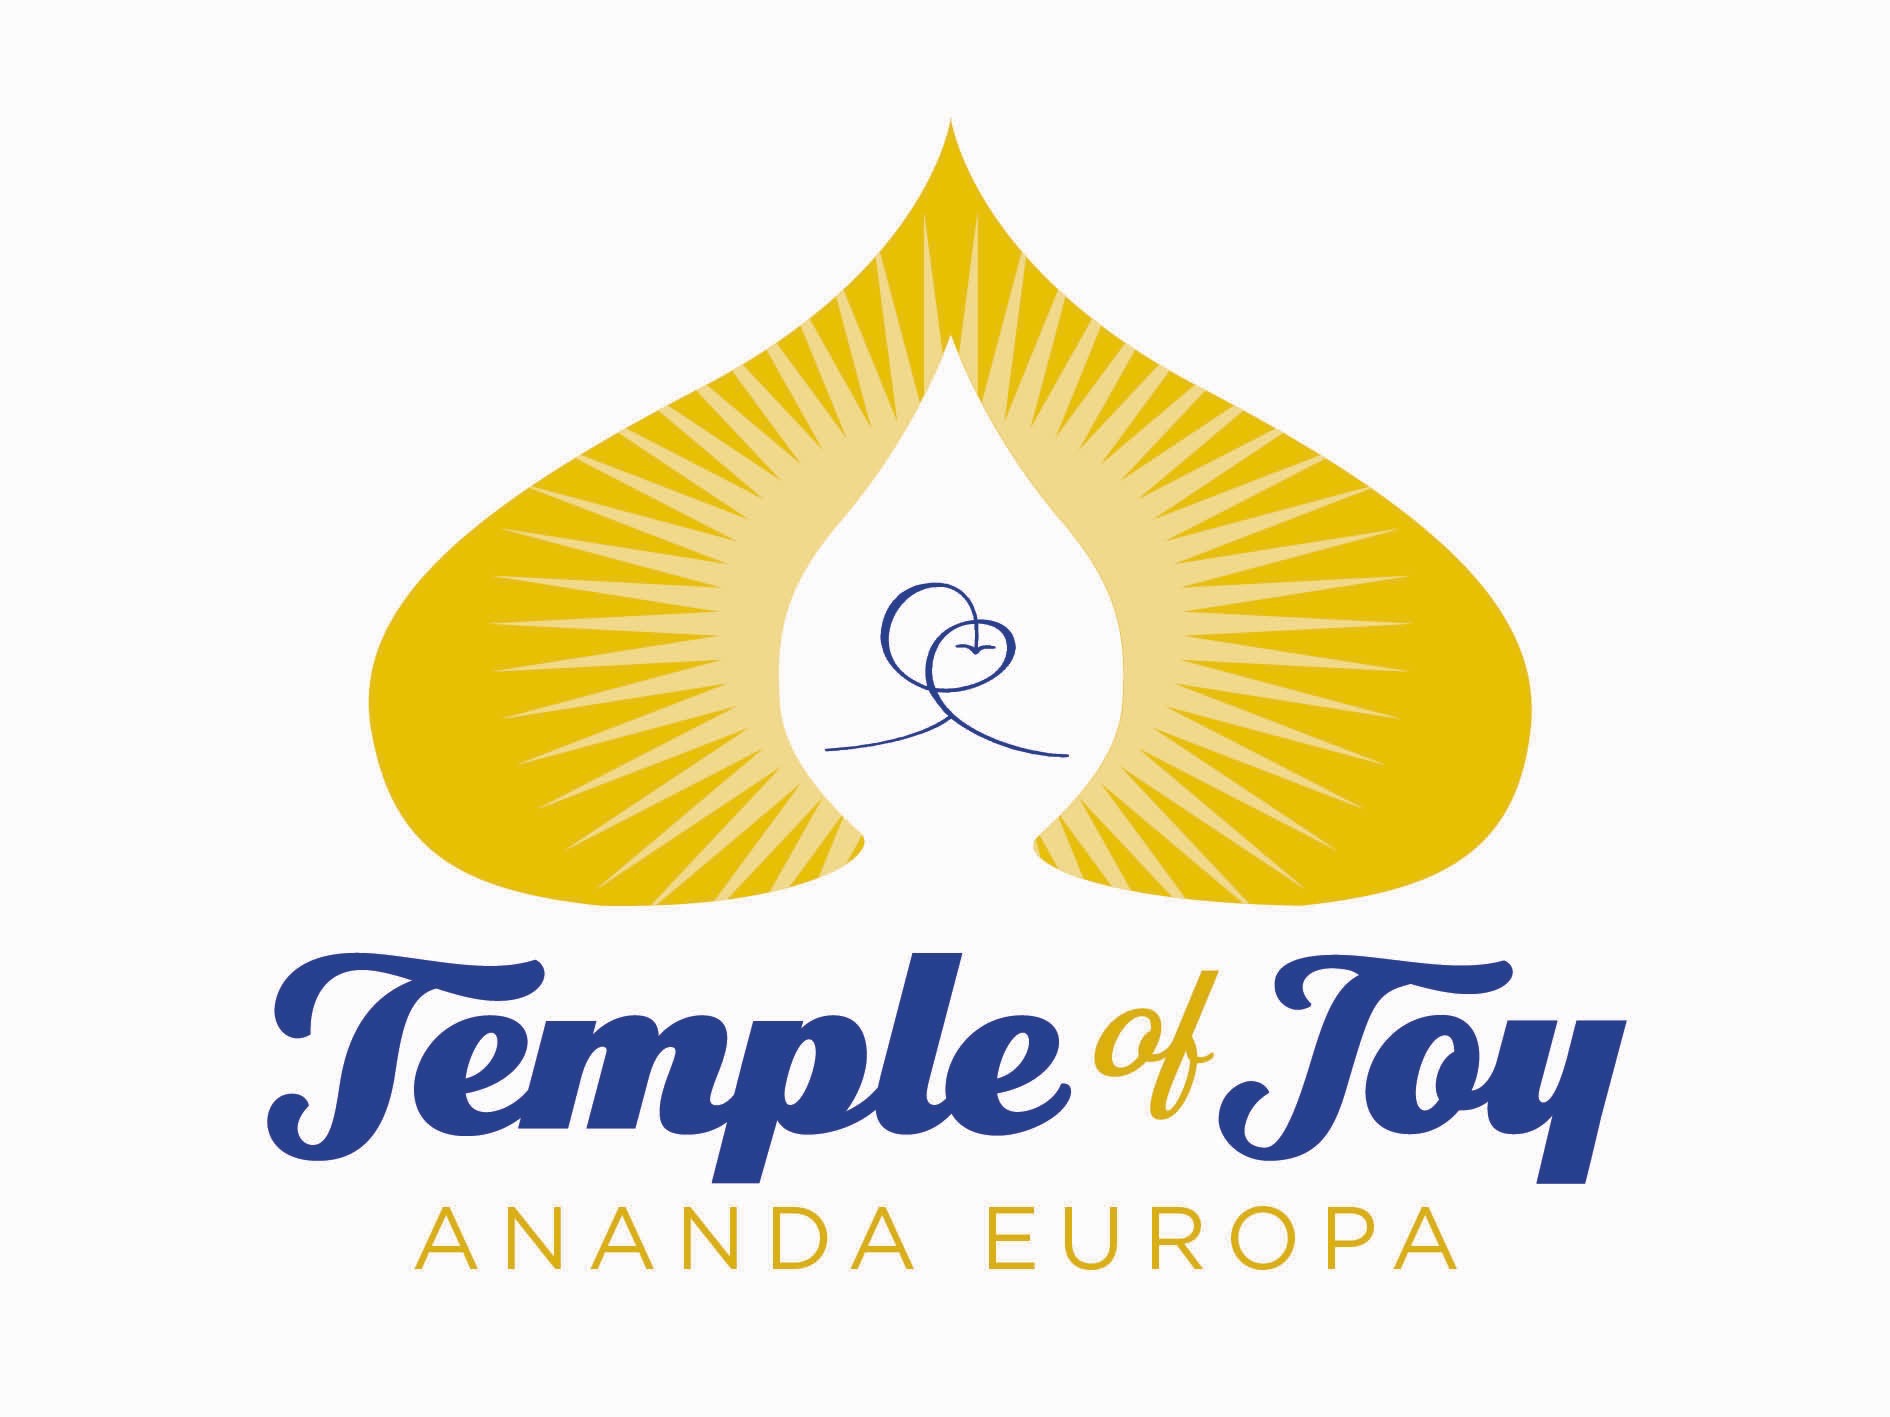 Tempio della Gioia ad Ananda Europa - Ananda Europa - Tempio della Gioia 